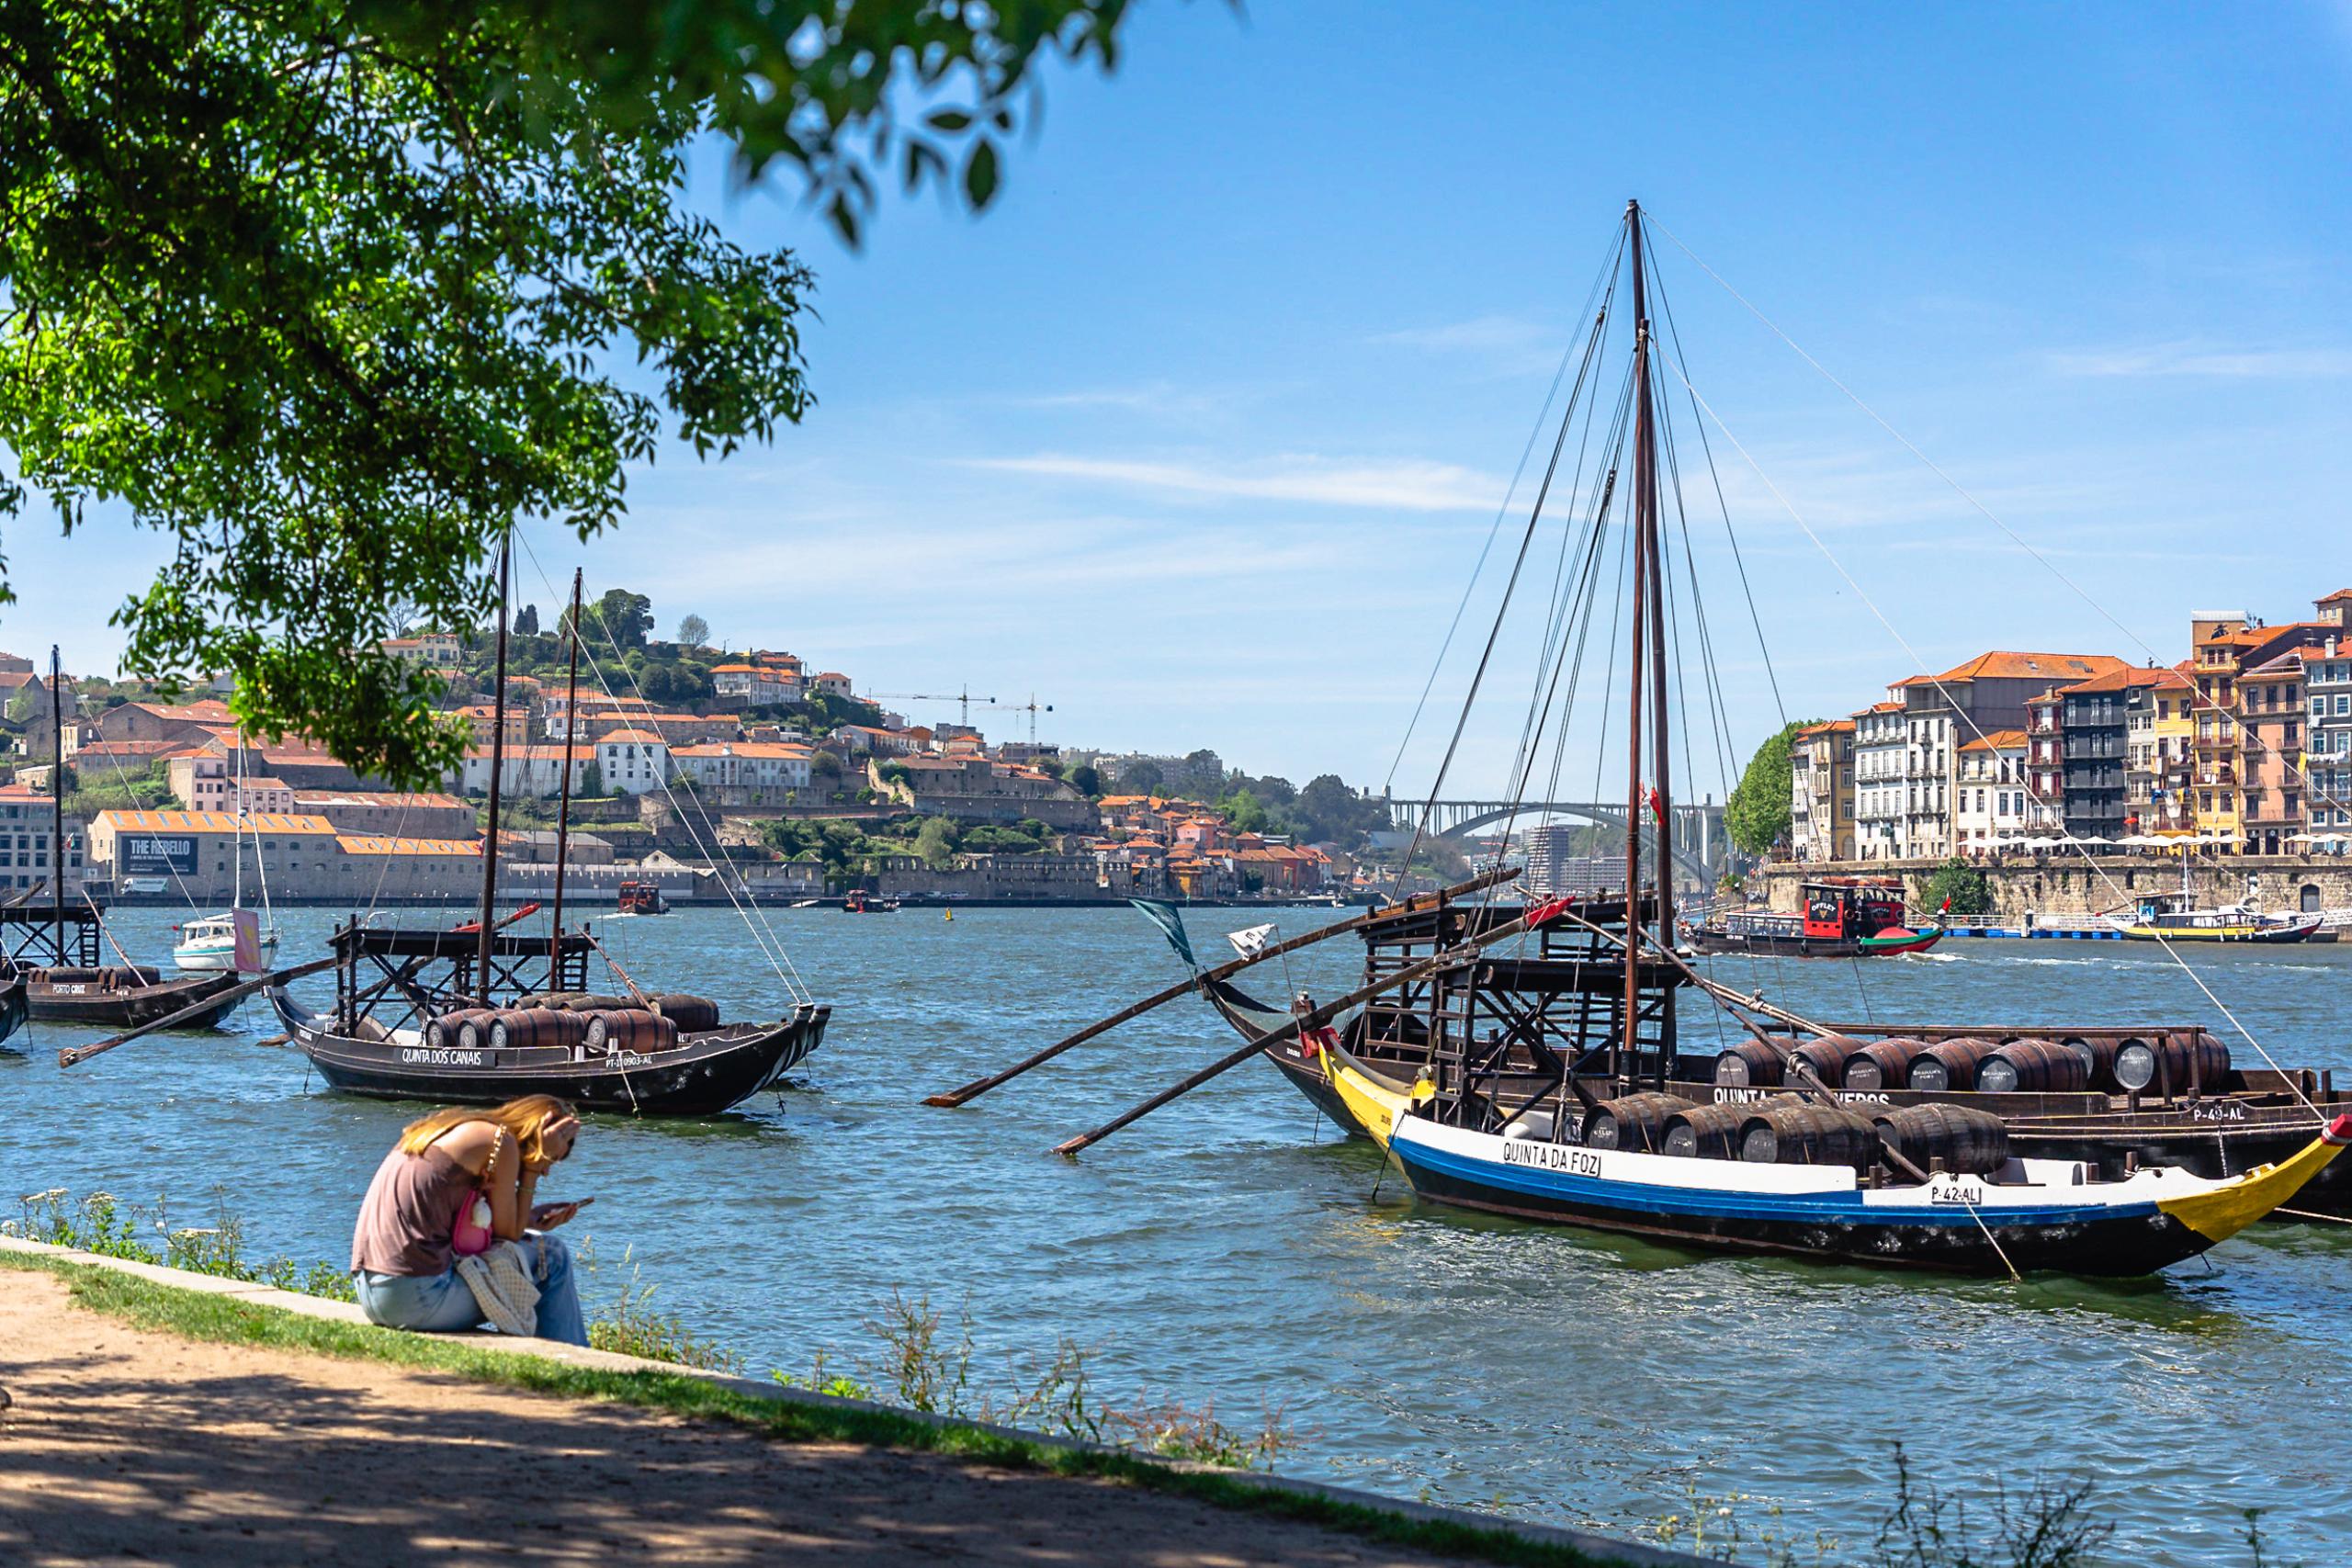 ポルトガル誕生の地「ポルト」観光モデルコース2日間